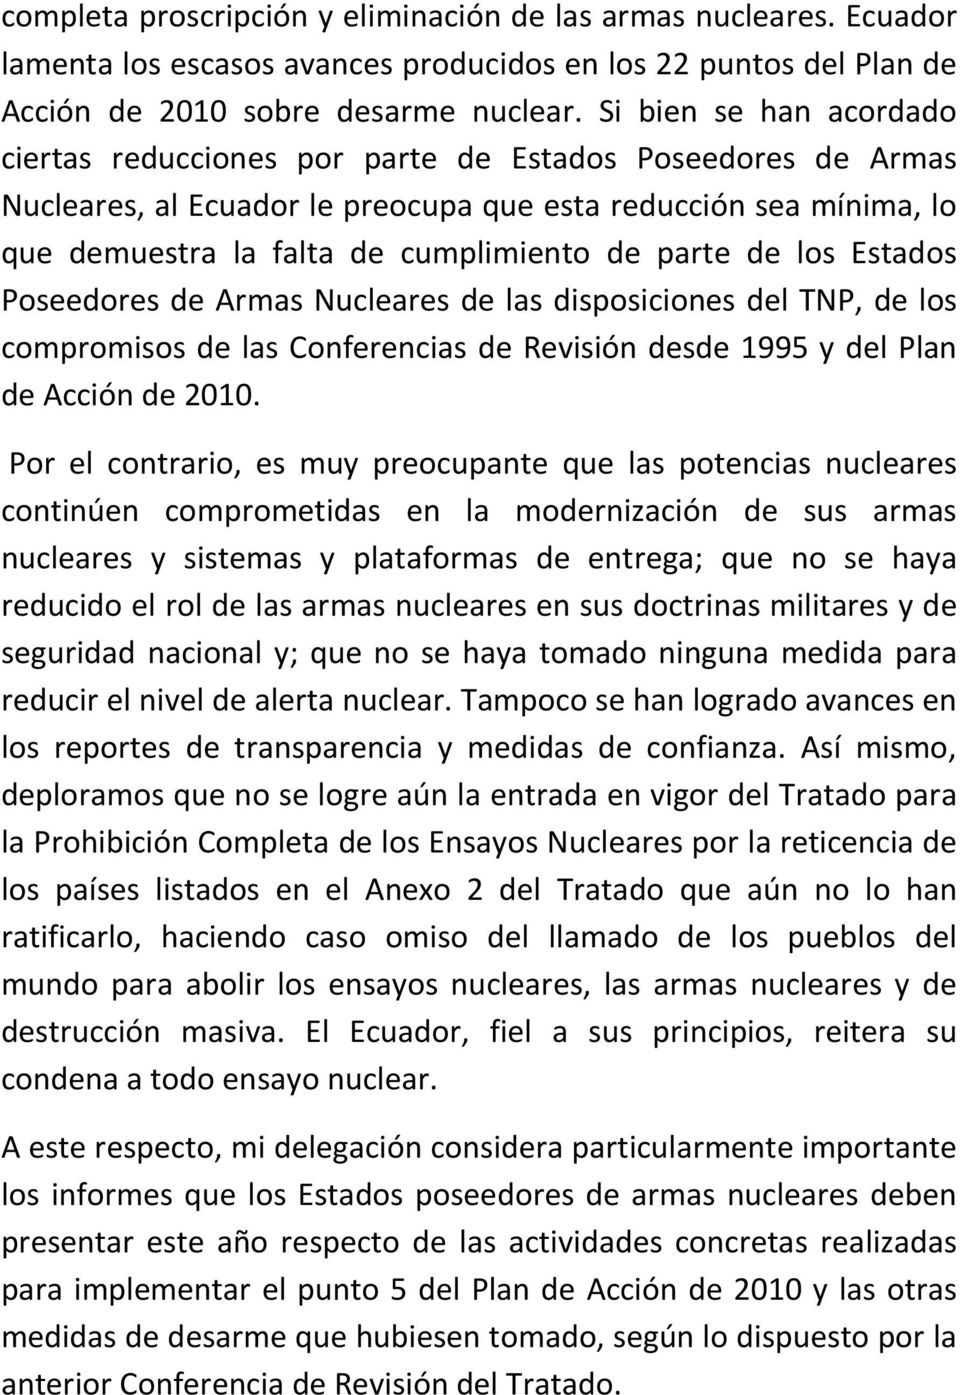 parte de los Estados Poseedores de Armas Nucleares de las disposiciones del TNP, de los compromisos de las Conferencias de Revisión desde 1995 y del Plan de Acción de 2010.